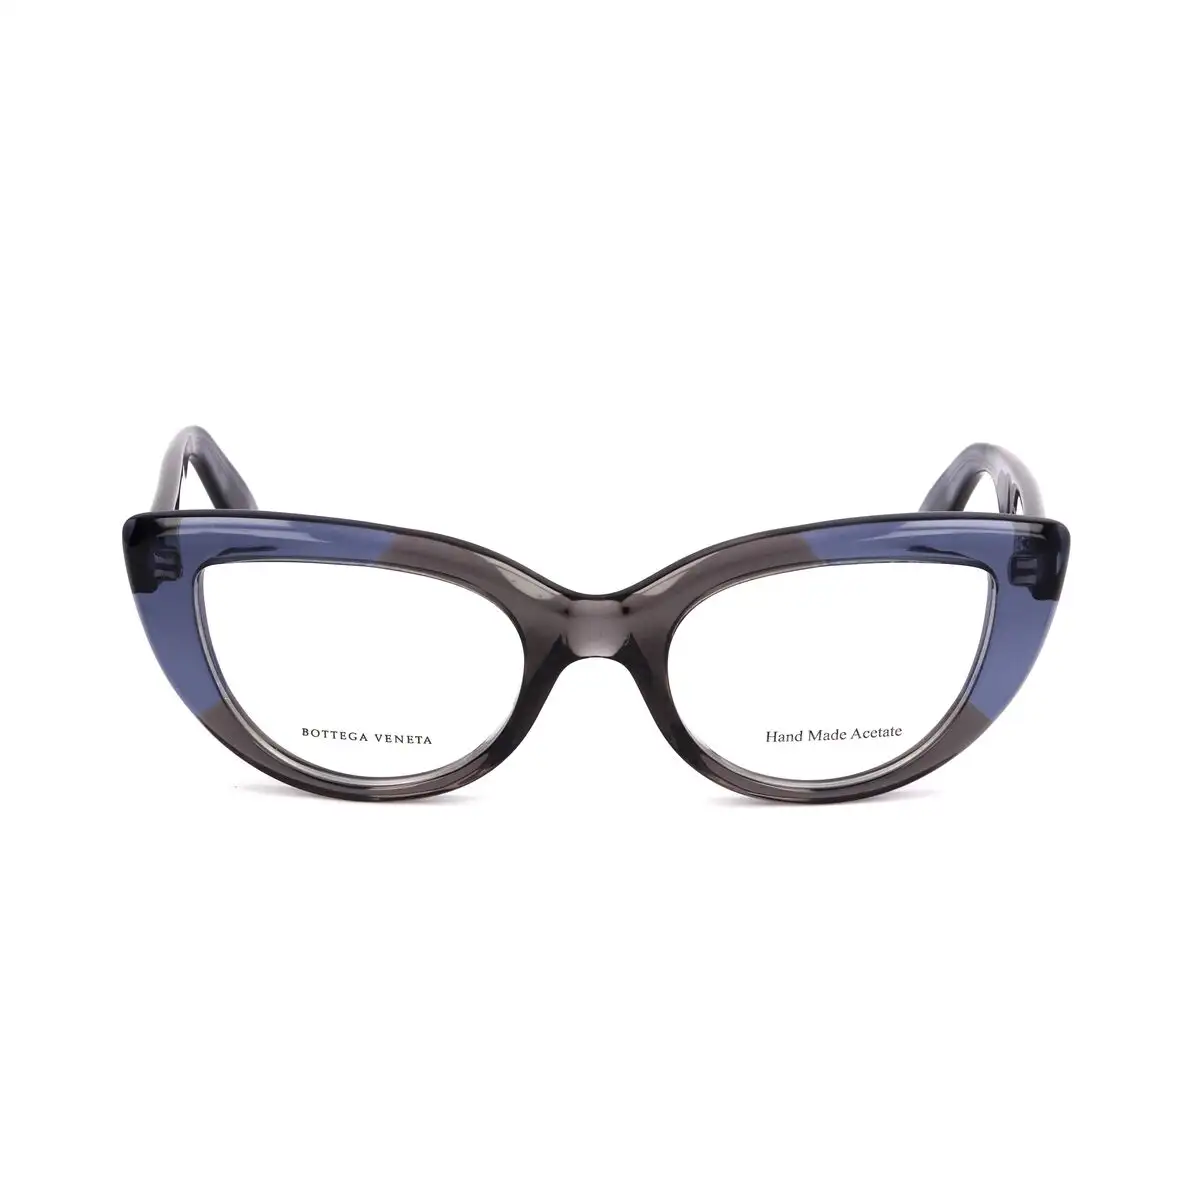 Monture de lunettes femme bottega veneta bv 269 4cs bleu_1478. Bienvenue sur DIAYTAR SENEGAL - Où Chaque Détail compte. Plongez dans notre univers et choisissez des produits qui ajoutent de l'éclat et de la joie à votre quotidien.